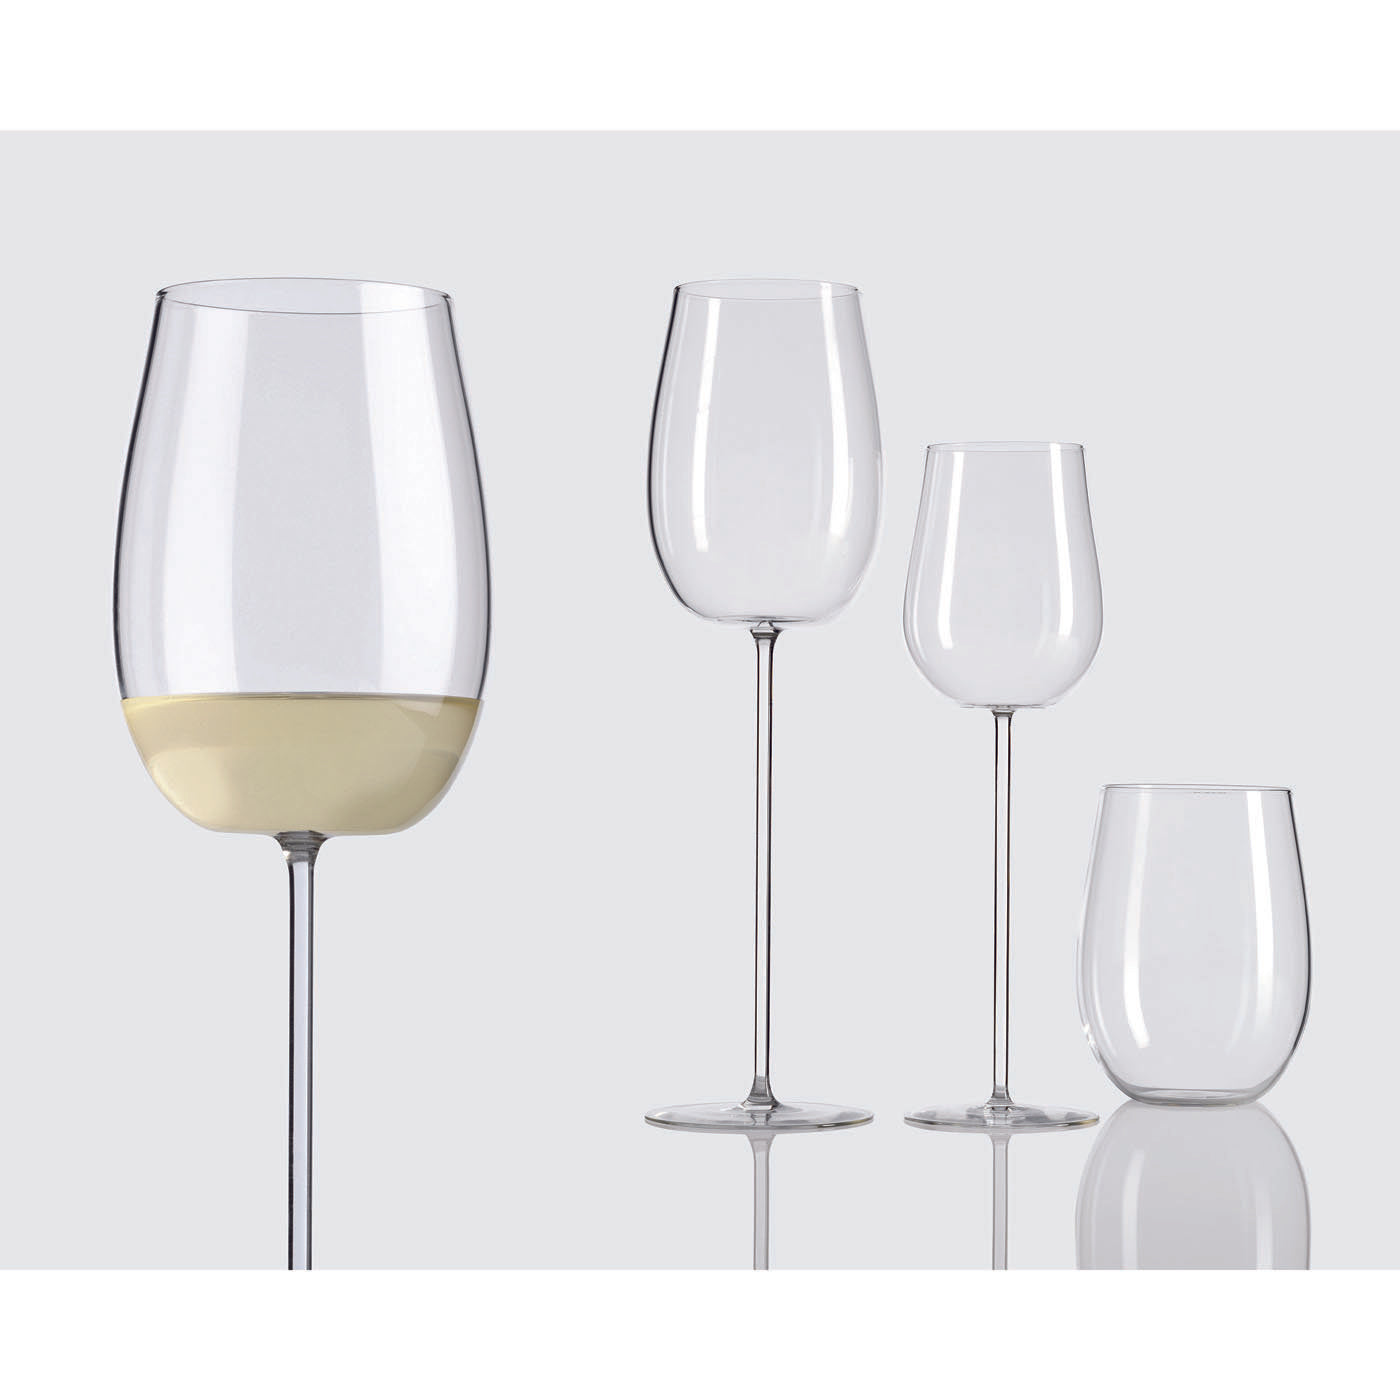 Set of 6 Modigliani White Wine Glasses - Alternative view 1